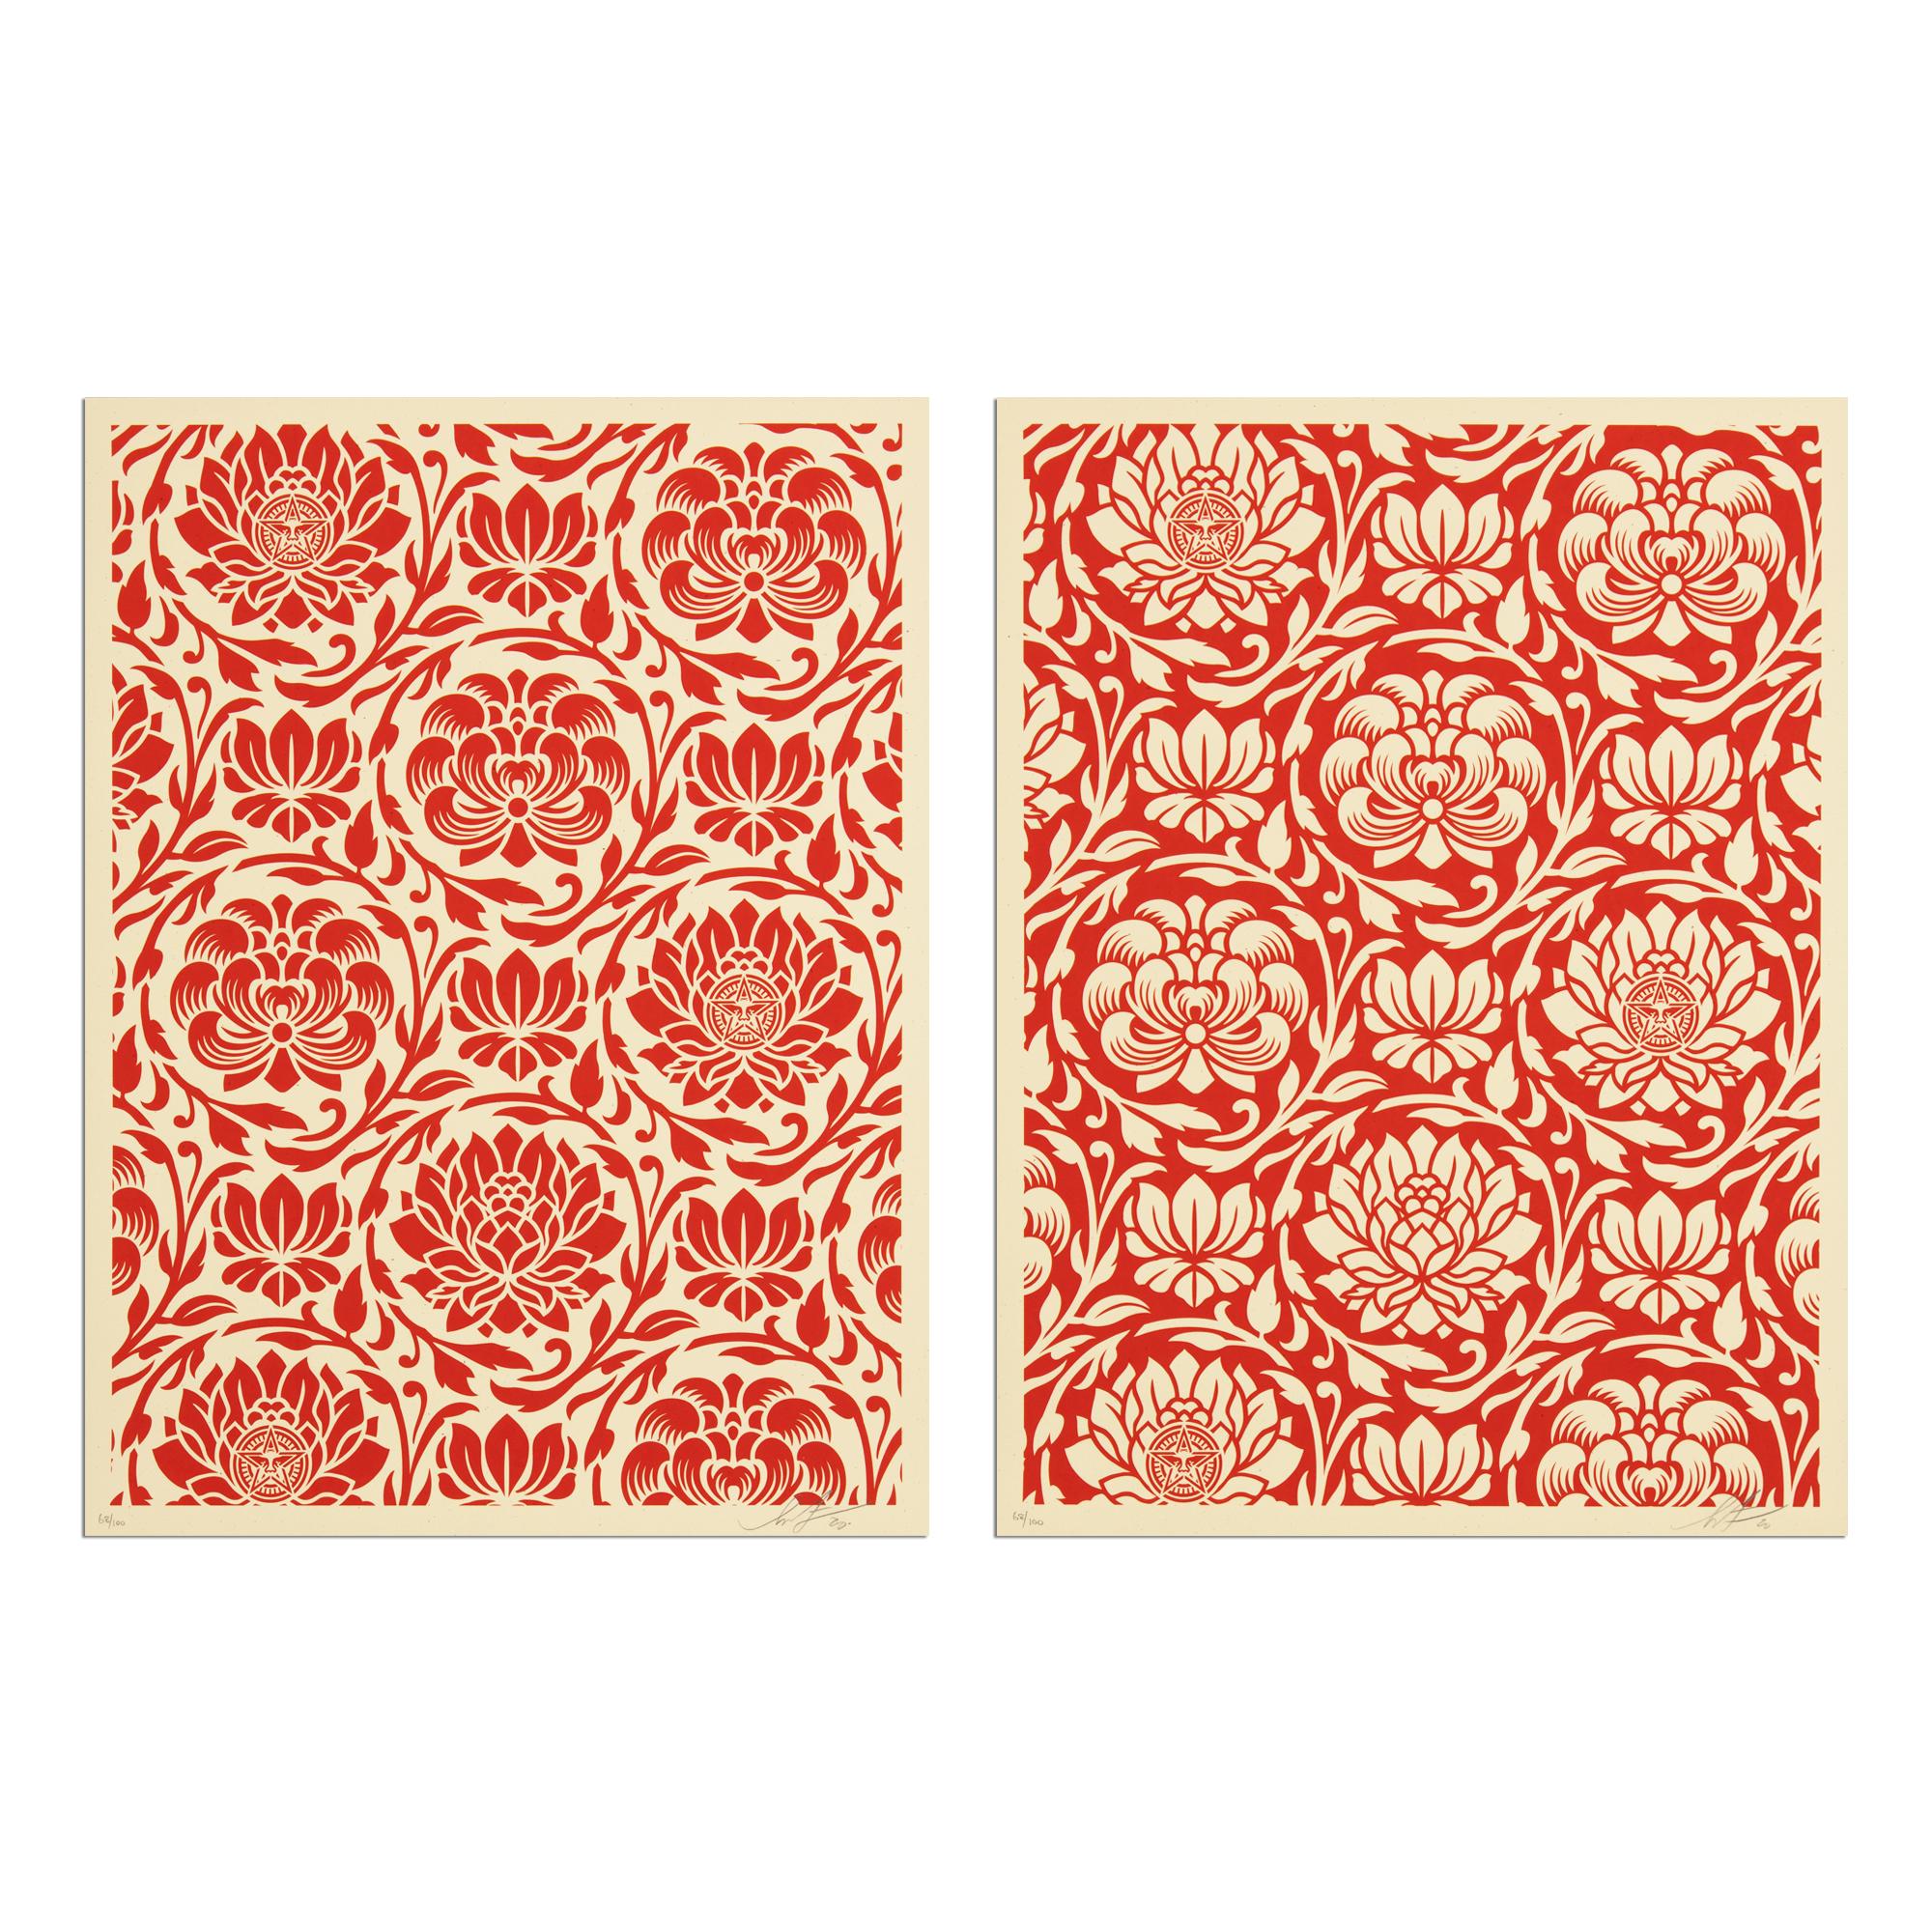 Shepard Fairey (Amerikaner, geb. 1970)
Blühende Harmonie (Rotes Yin/Yang), 2020
Medium: 2 Siebdrucke auf Papier
Abmessungen: jeweils 61 x 46 cm (24 x 18 Zoll)
Auflage von 100: Jedes Exemplar handsigniert und mit Bleistift nummeriert
Zustand: